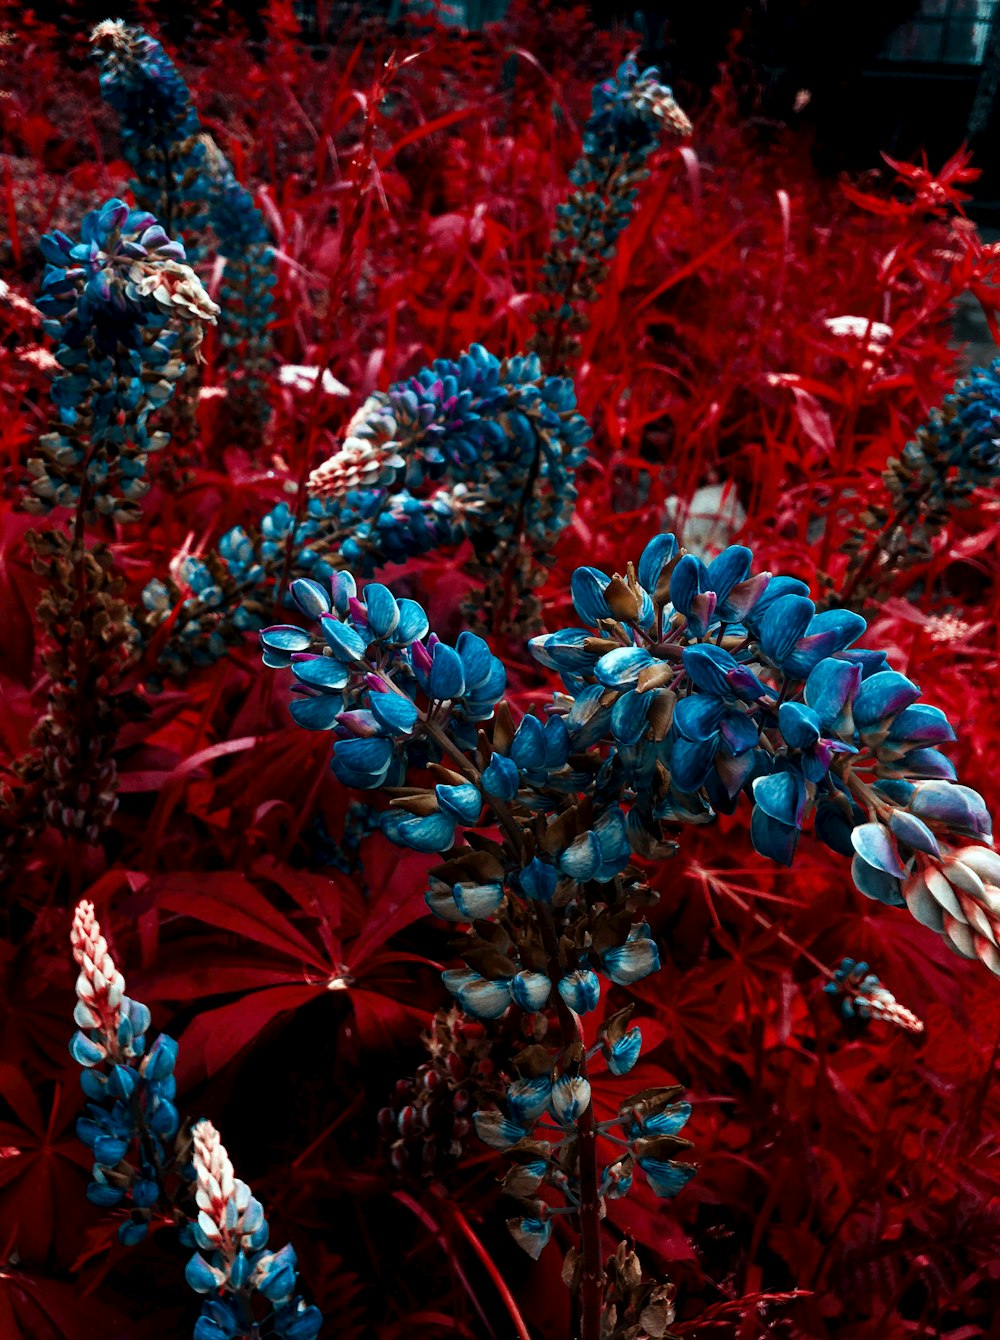 red and blue flowers in tilt shift lens